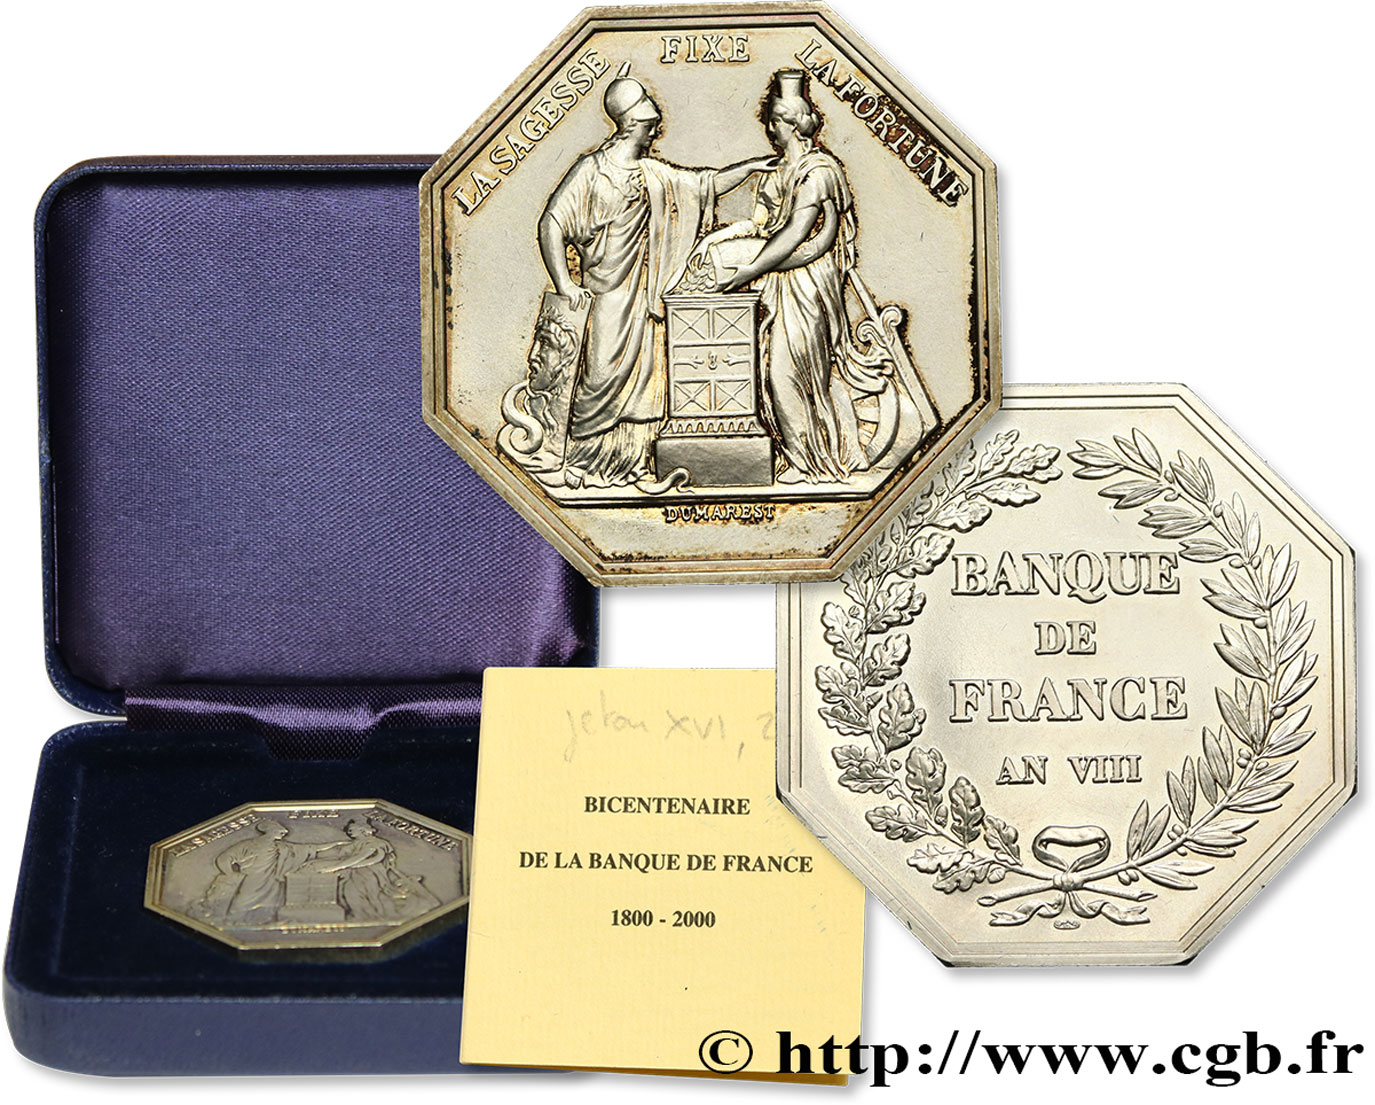 BANQUE DE FRANCE BANQUE DE FRANCE sans poinçon, refrappe du bicentenaire de la Banque de France fST